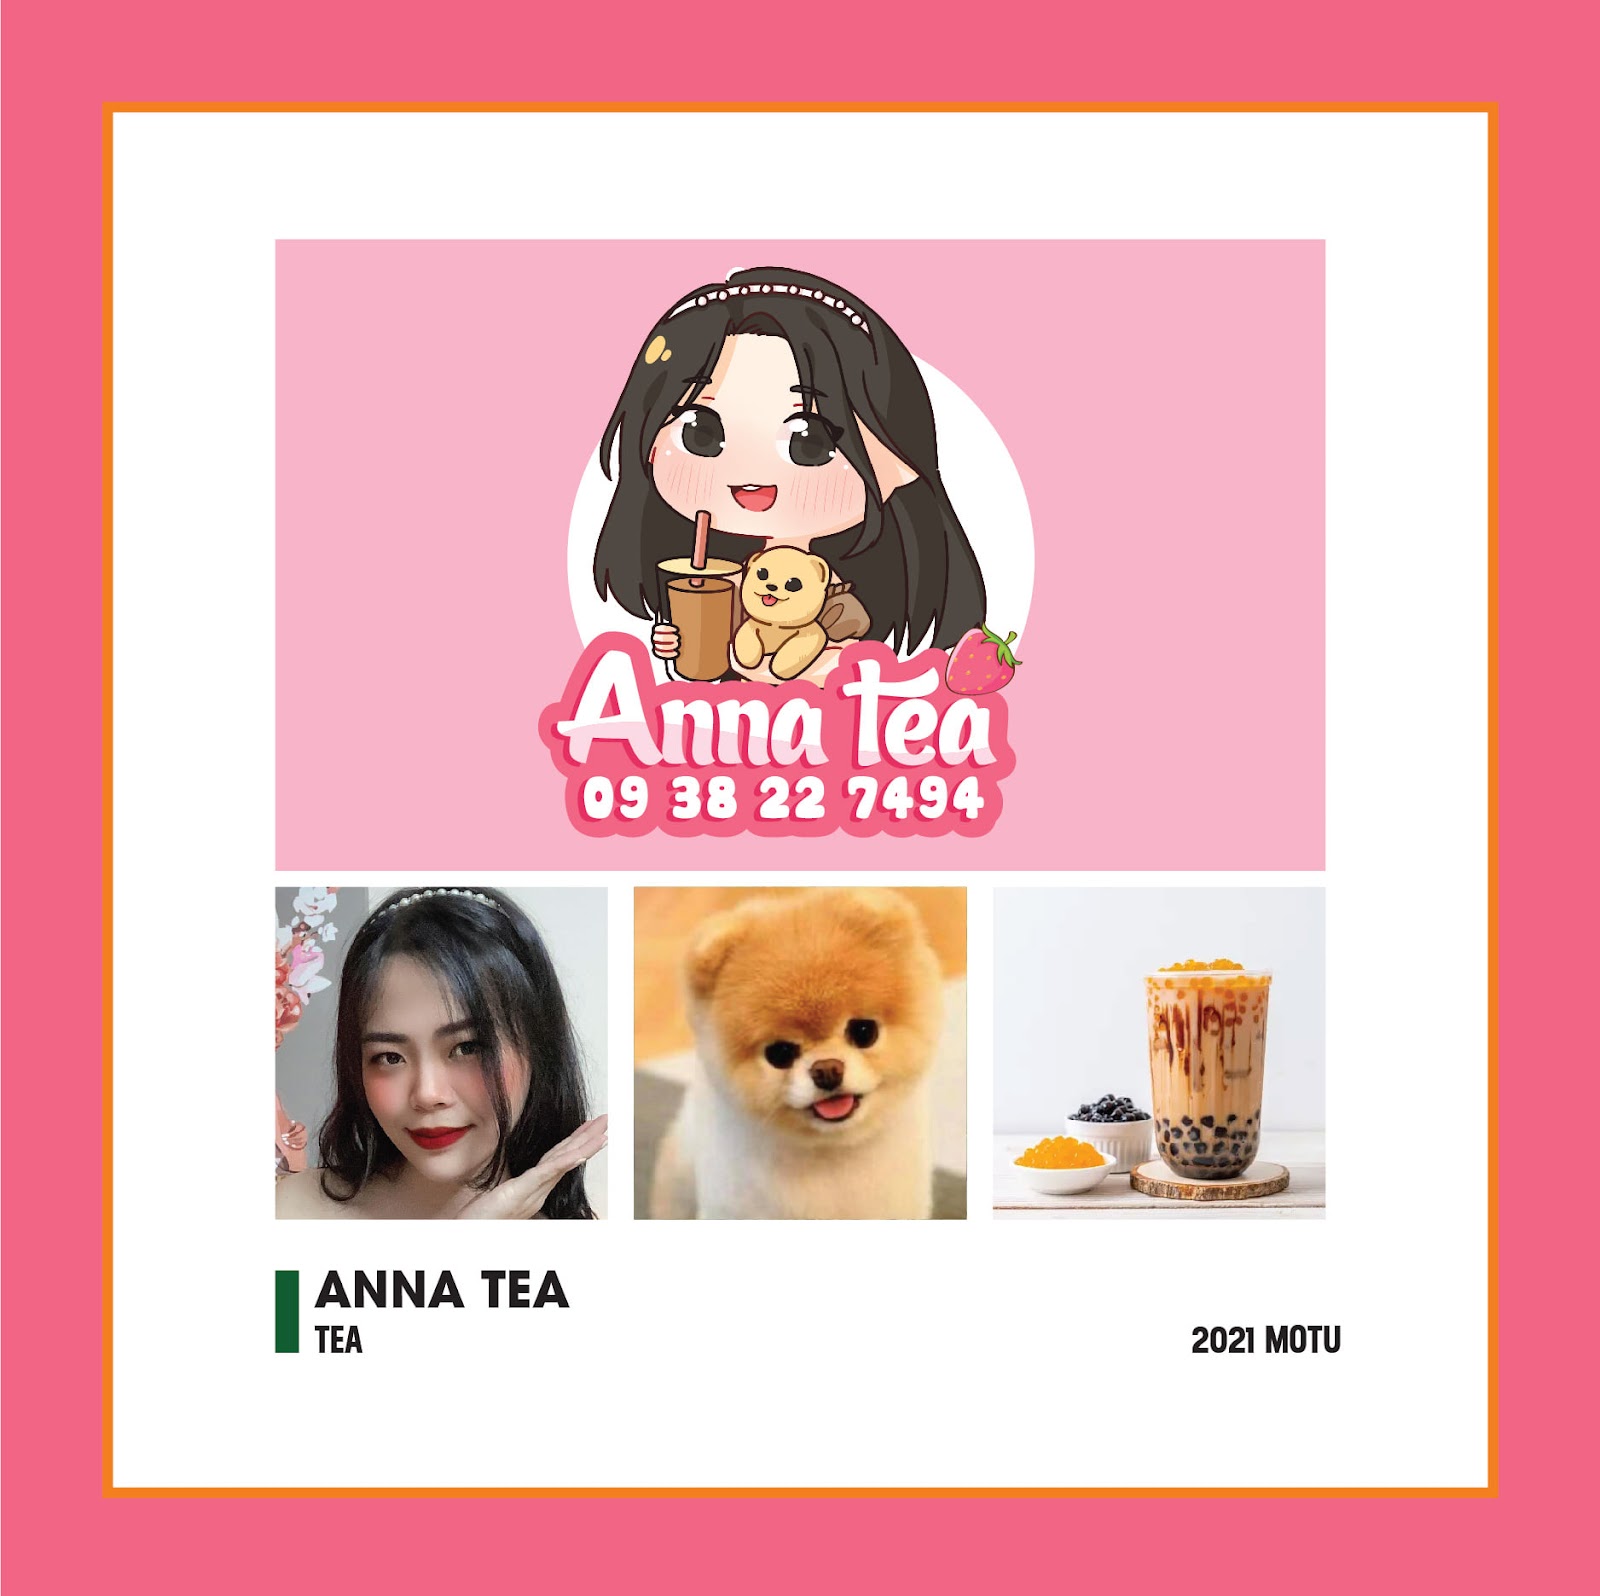 Mẫu thiết kế logo chibi cute Cửa hàng Anna Tea